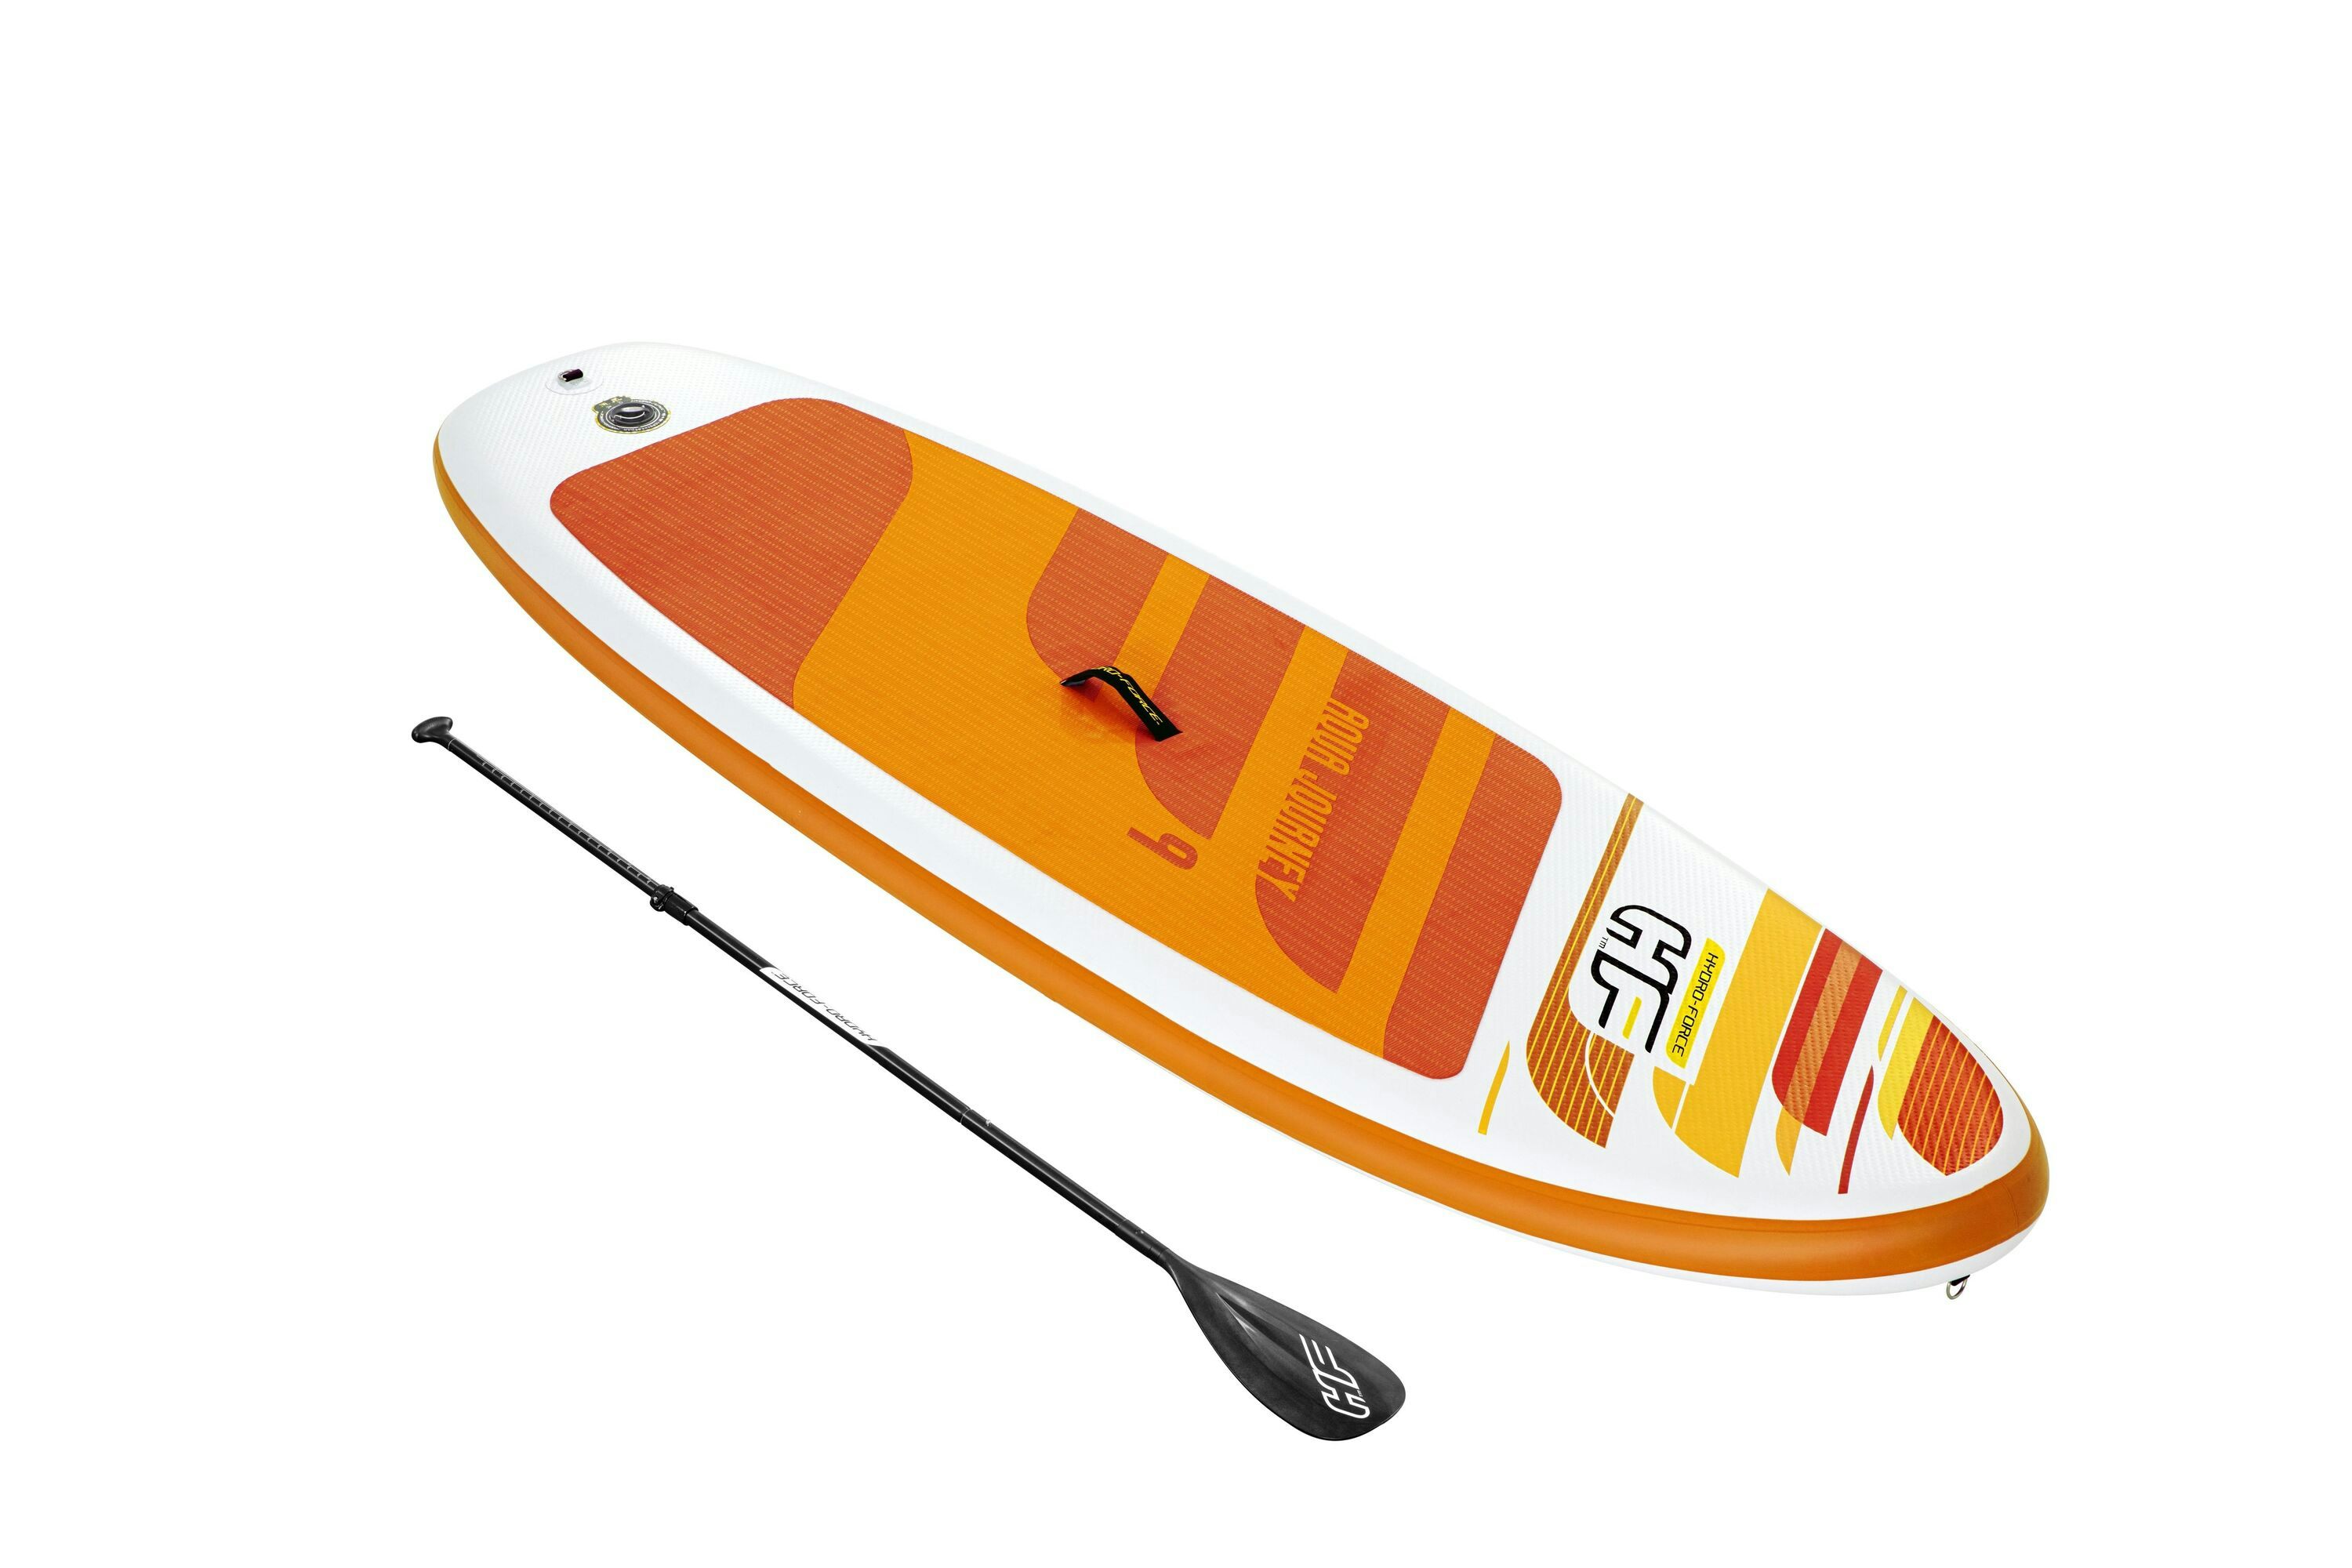 Sports d'eau Paddle SUP gonflable Hydro-Force™ Aqua Journey 274 x 76 x 12 cm, pompe, pagaie, leash, sac à dos de transport Bestway 1